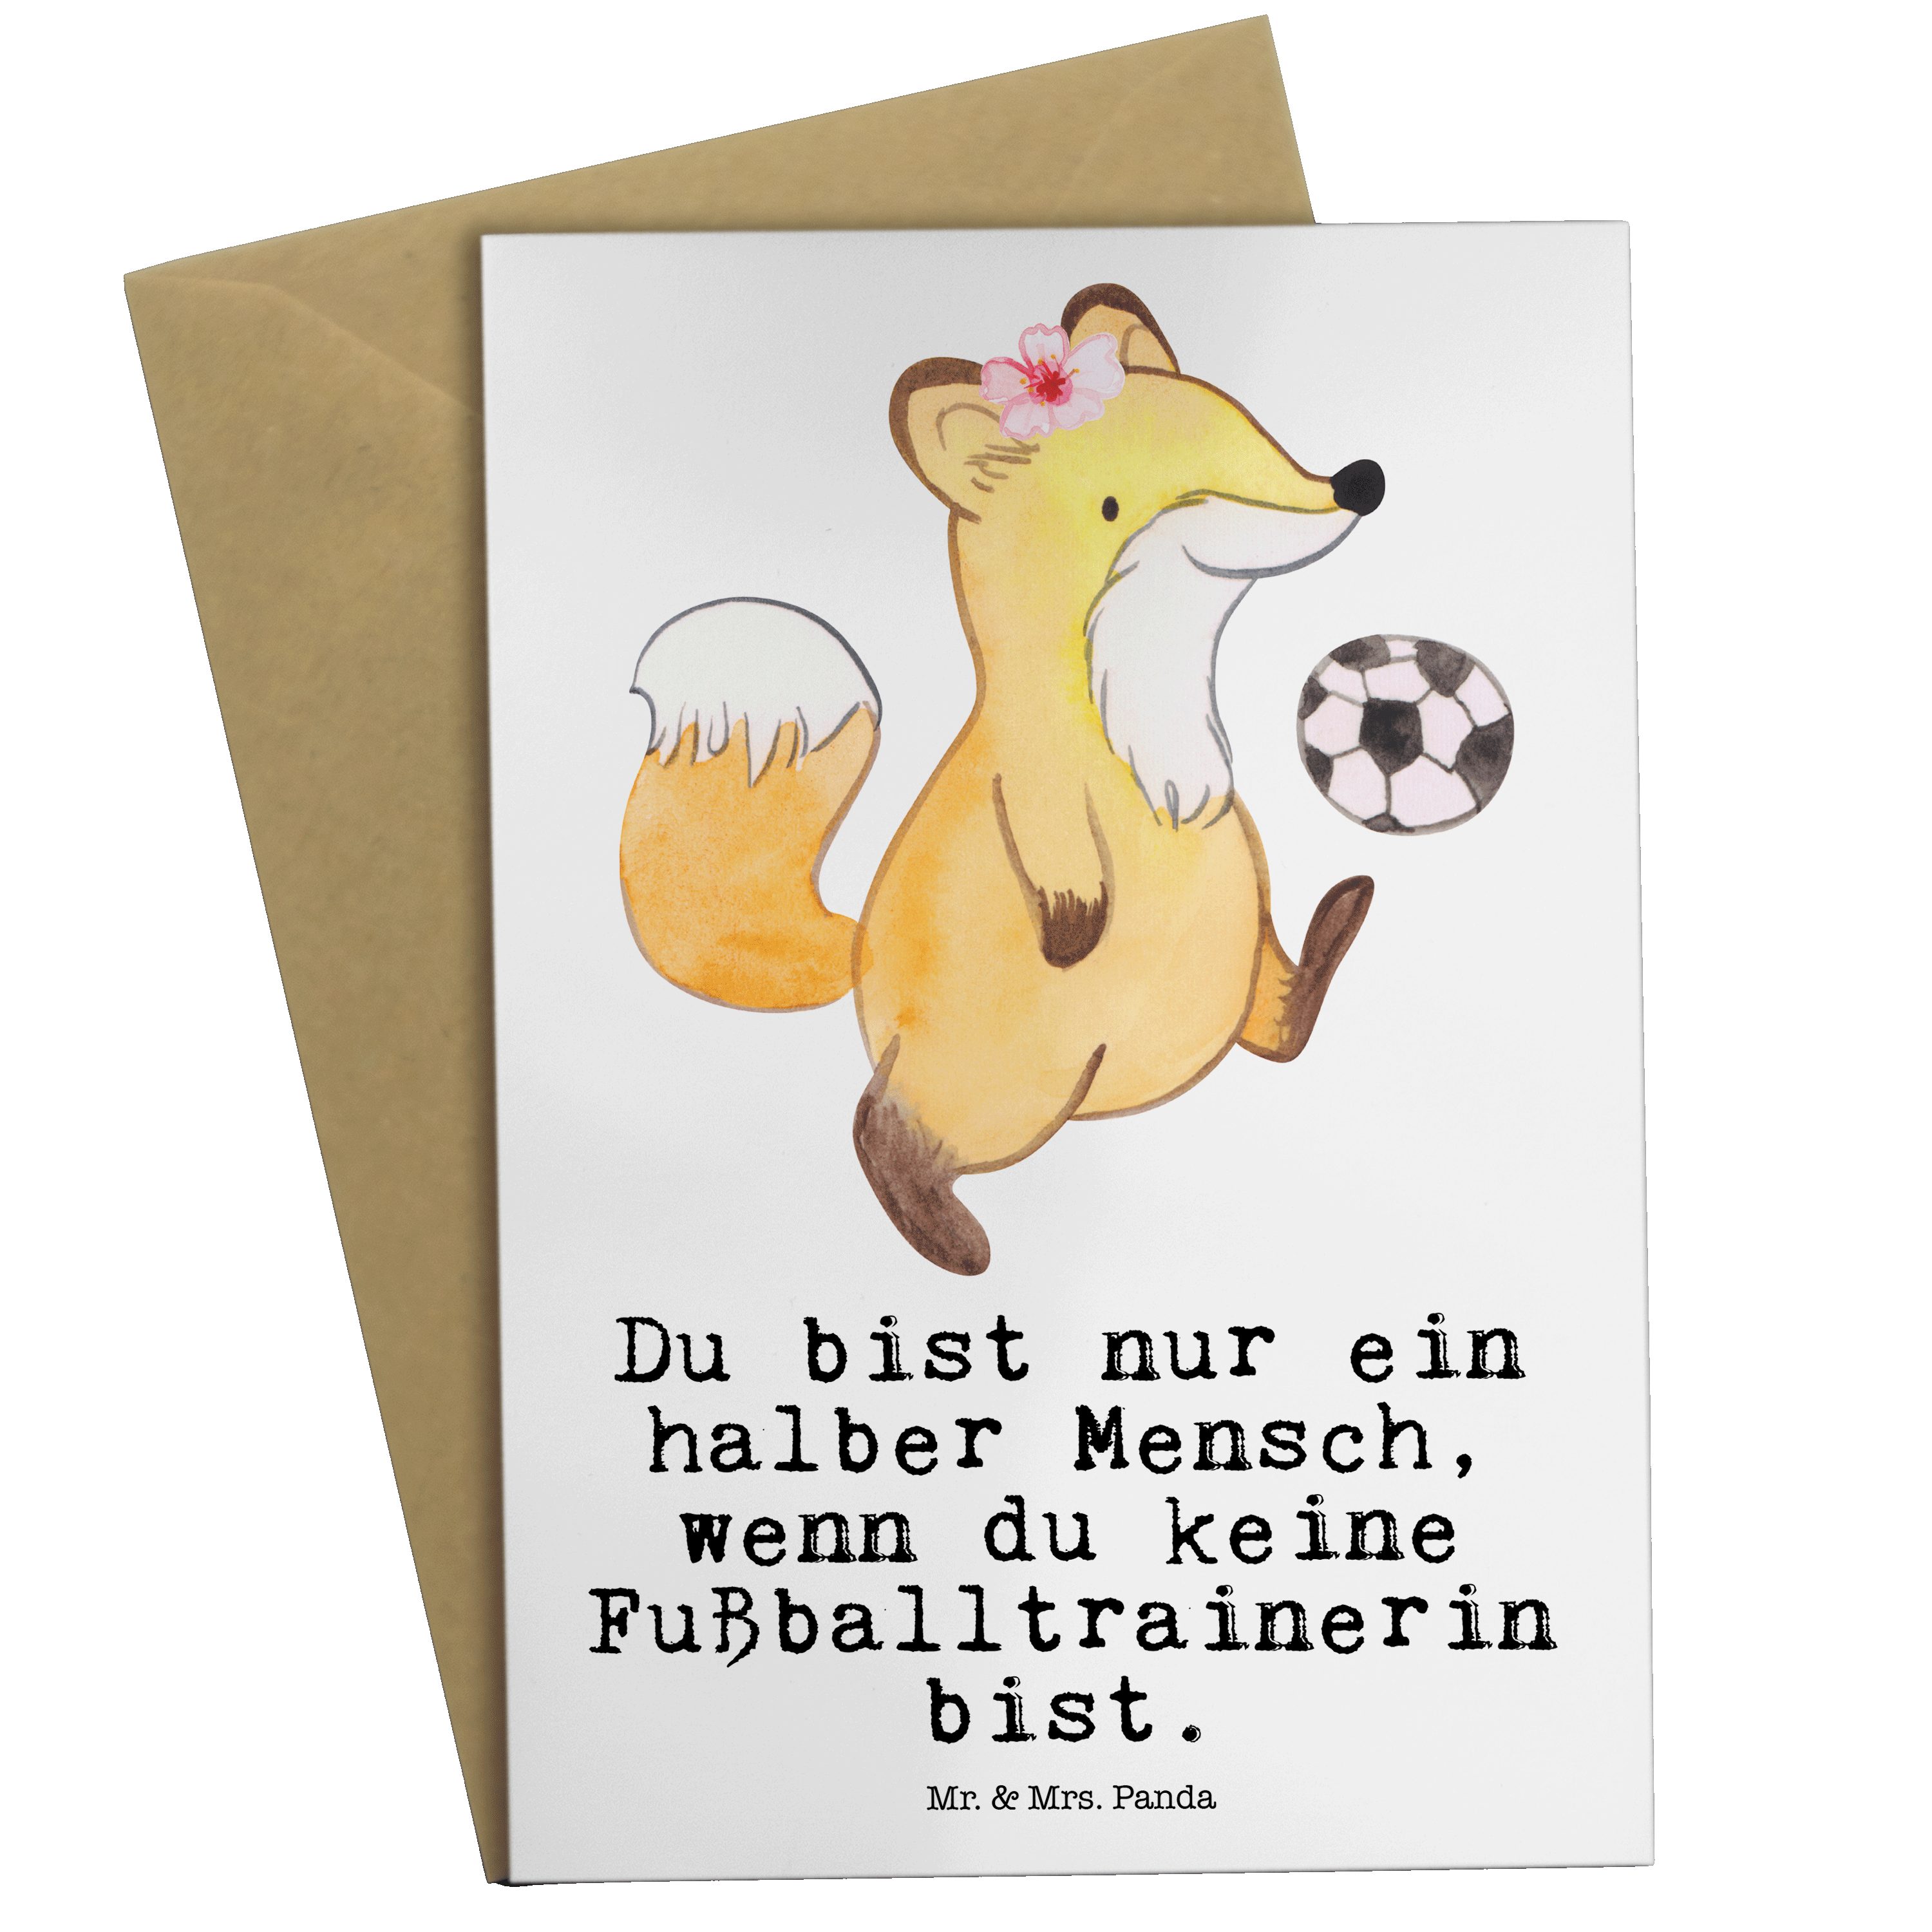 Mr. & Mrs. Panda Grußkarte Fußballtrainerin mit Herz - Weiß - Geschenk, Verein Fußball, Fußballs